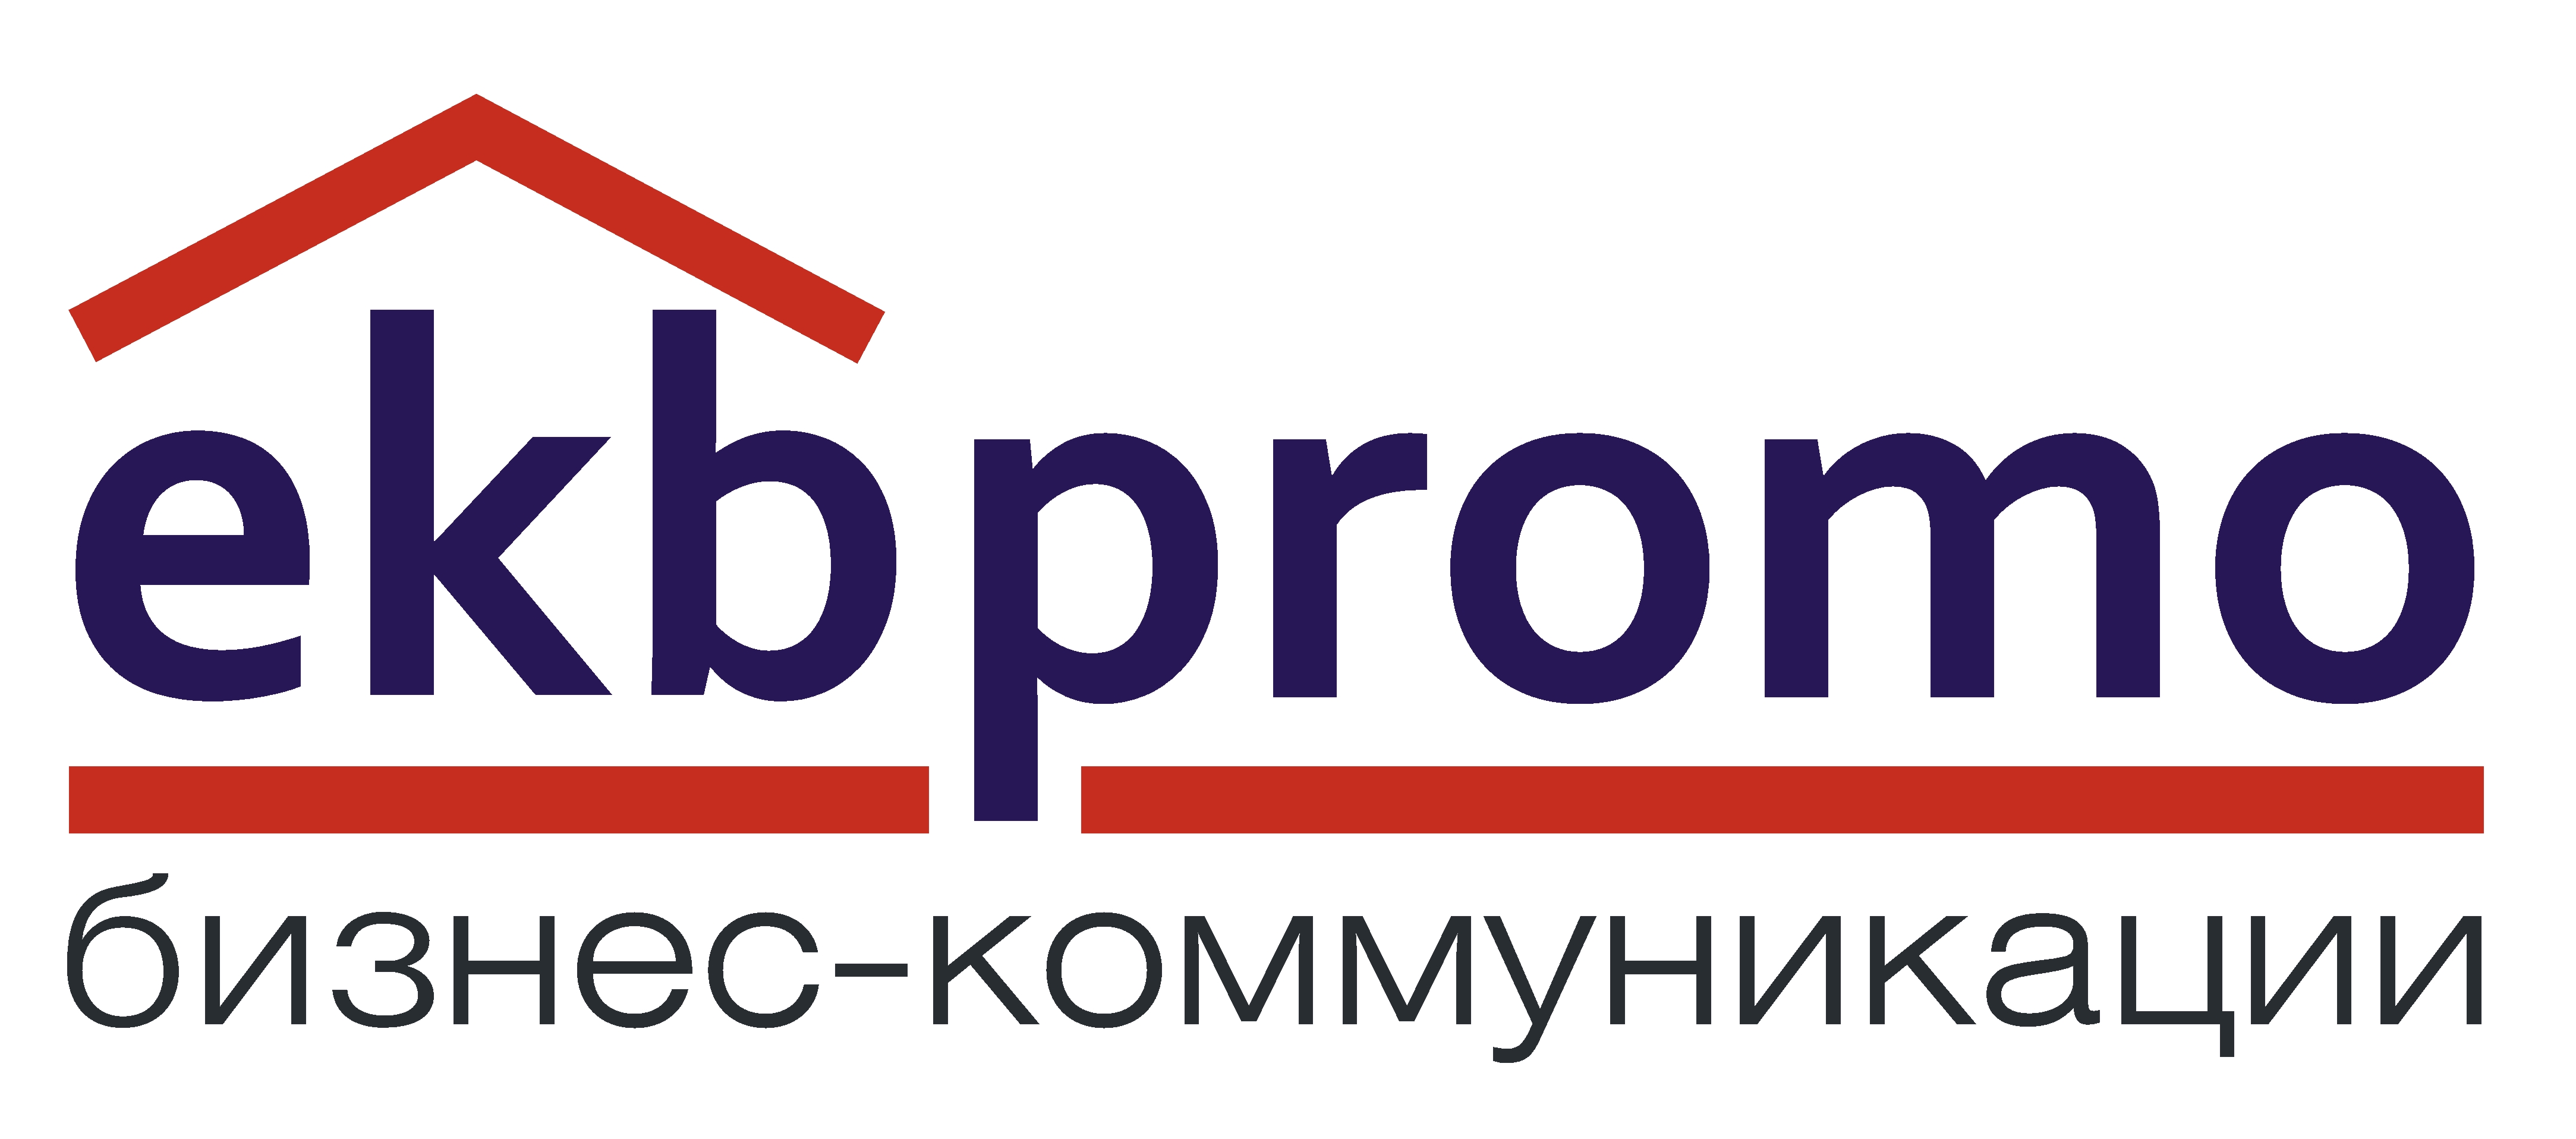 Коммуникационная группа Ekbpromo